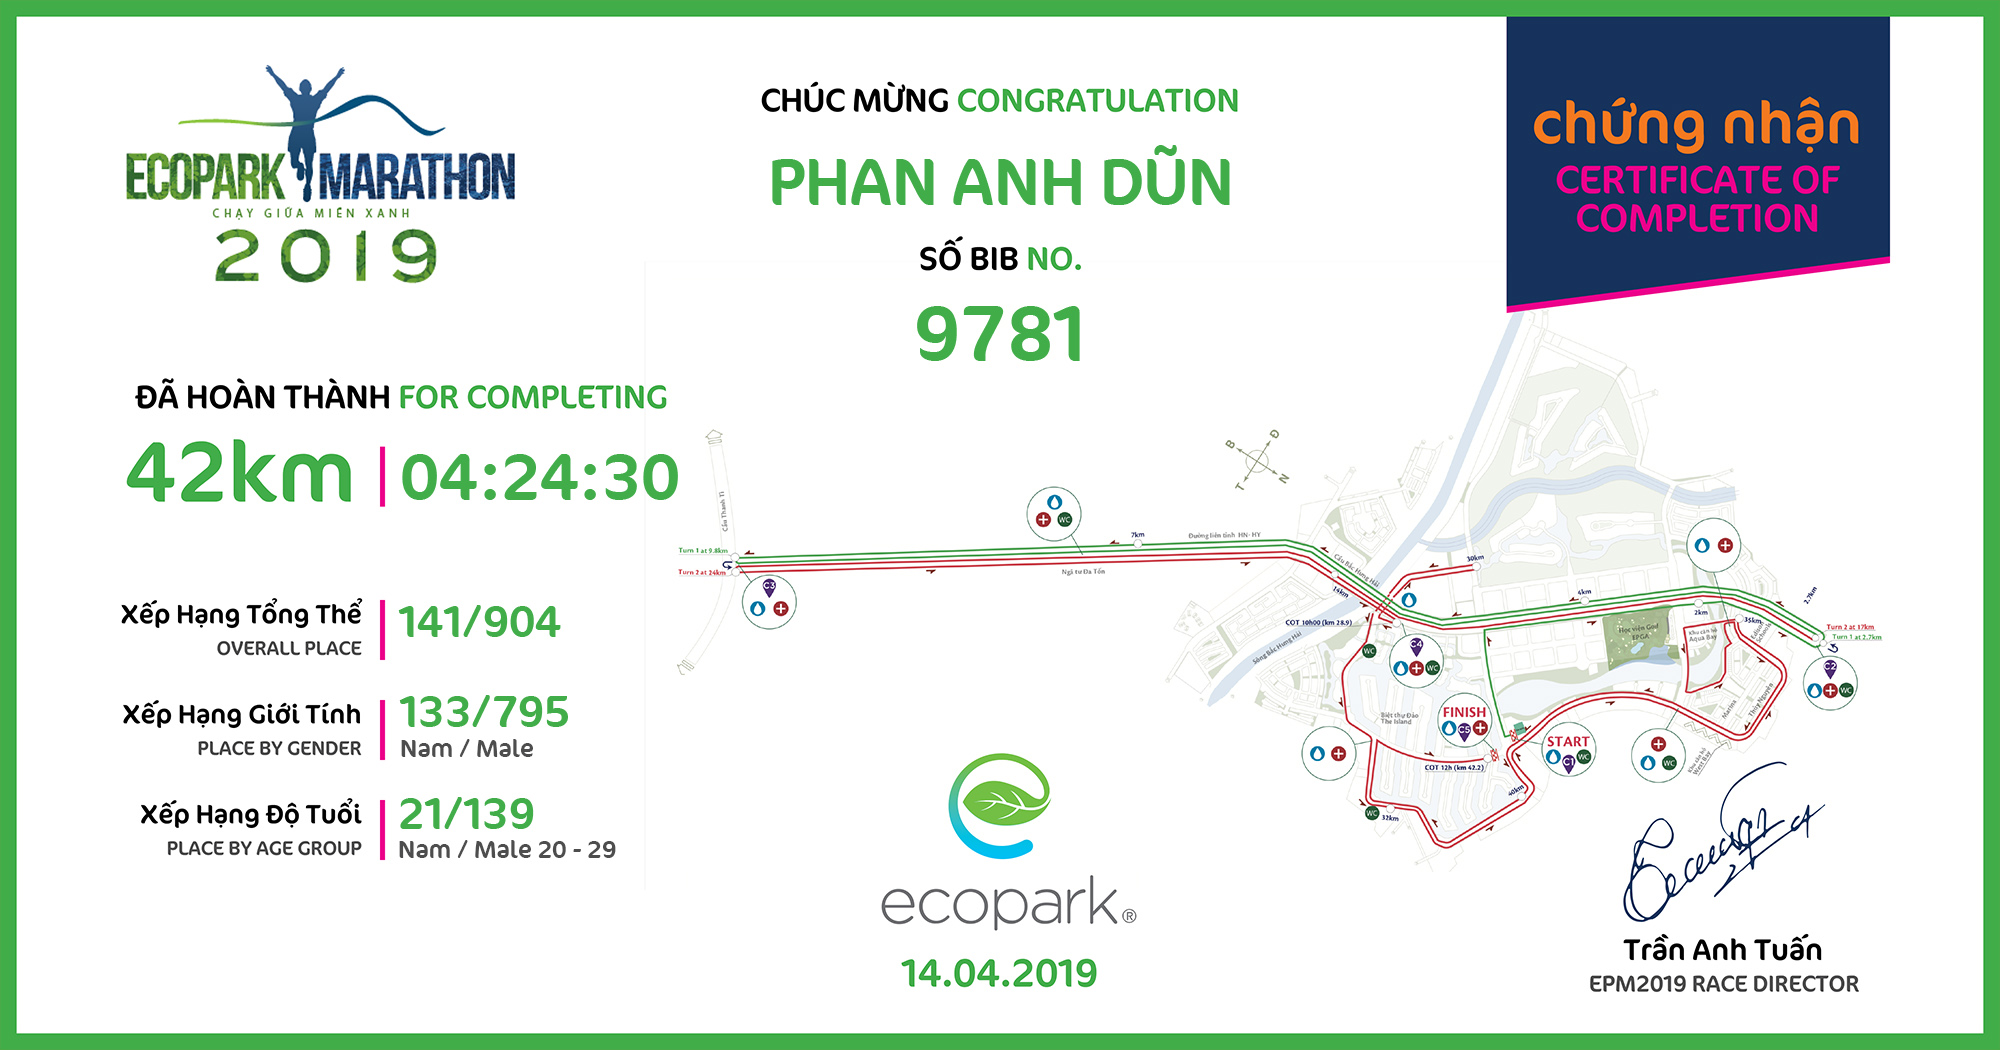 9781 - Phan Anh Dũn